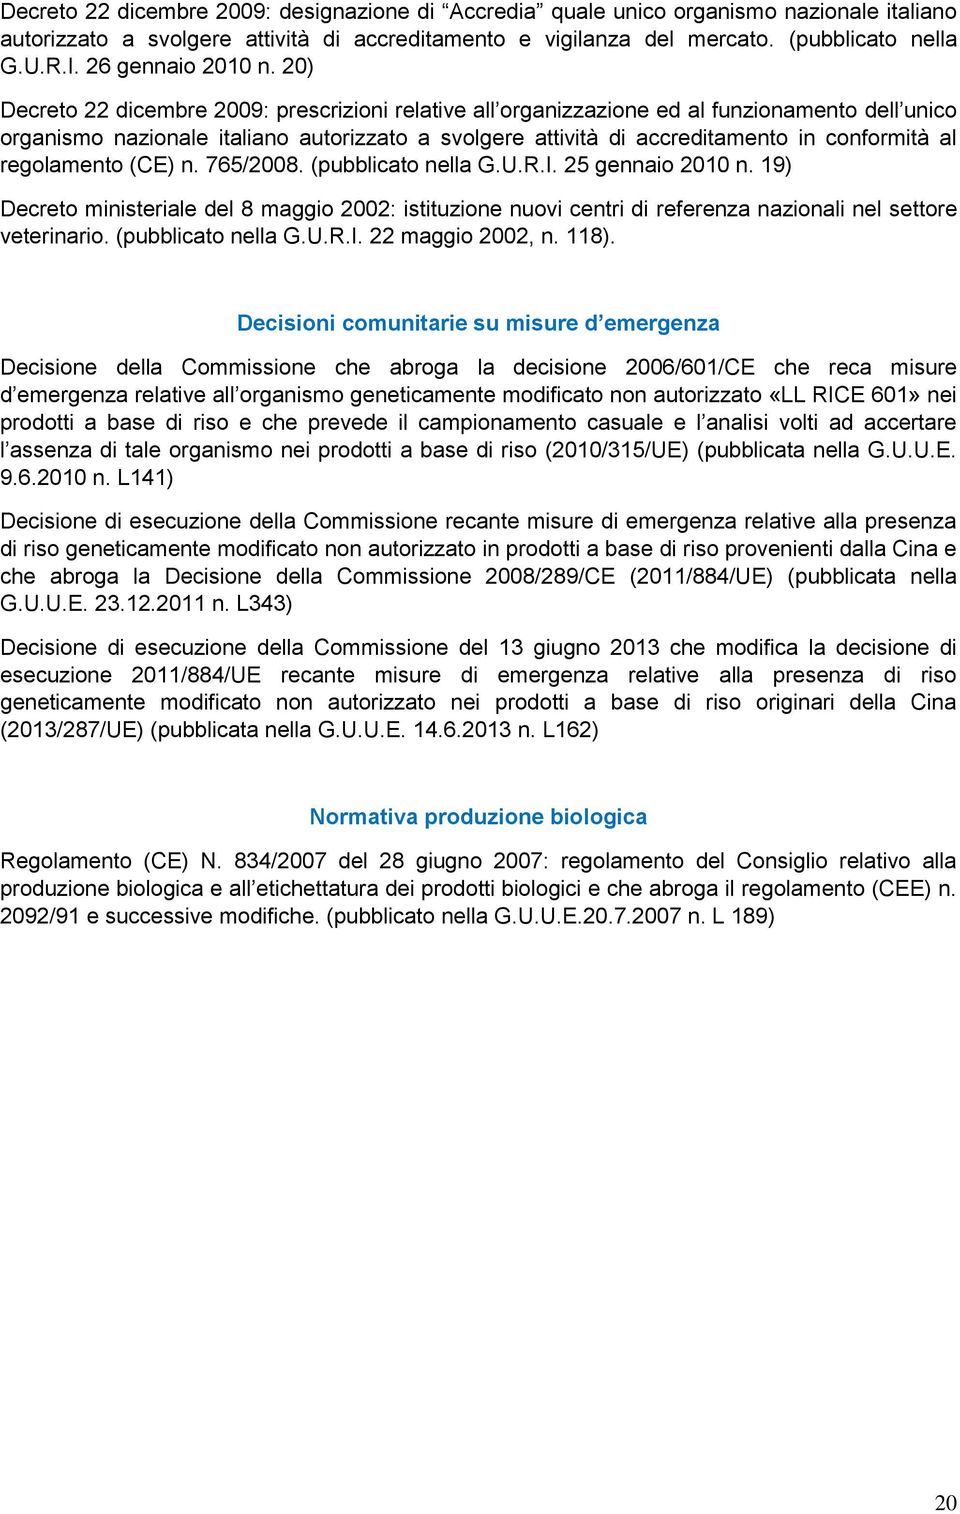 20) Decreto 22 dicembre 2009: prescrizioni relative all organizzazione ed al funzionamento dell unico organismo nazionale italiano autorizzato a svolgere attività di accreditamento in conformità al